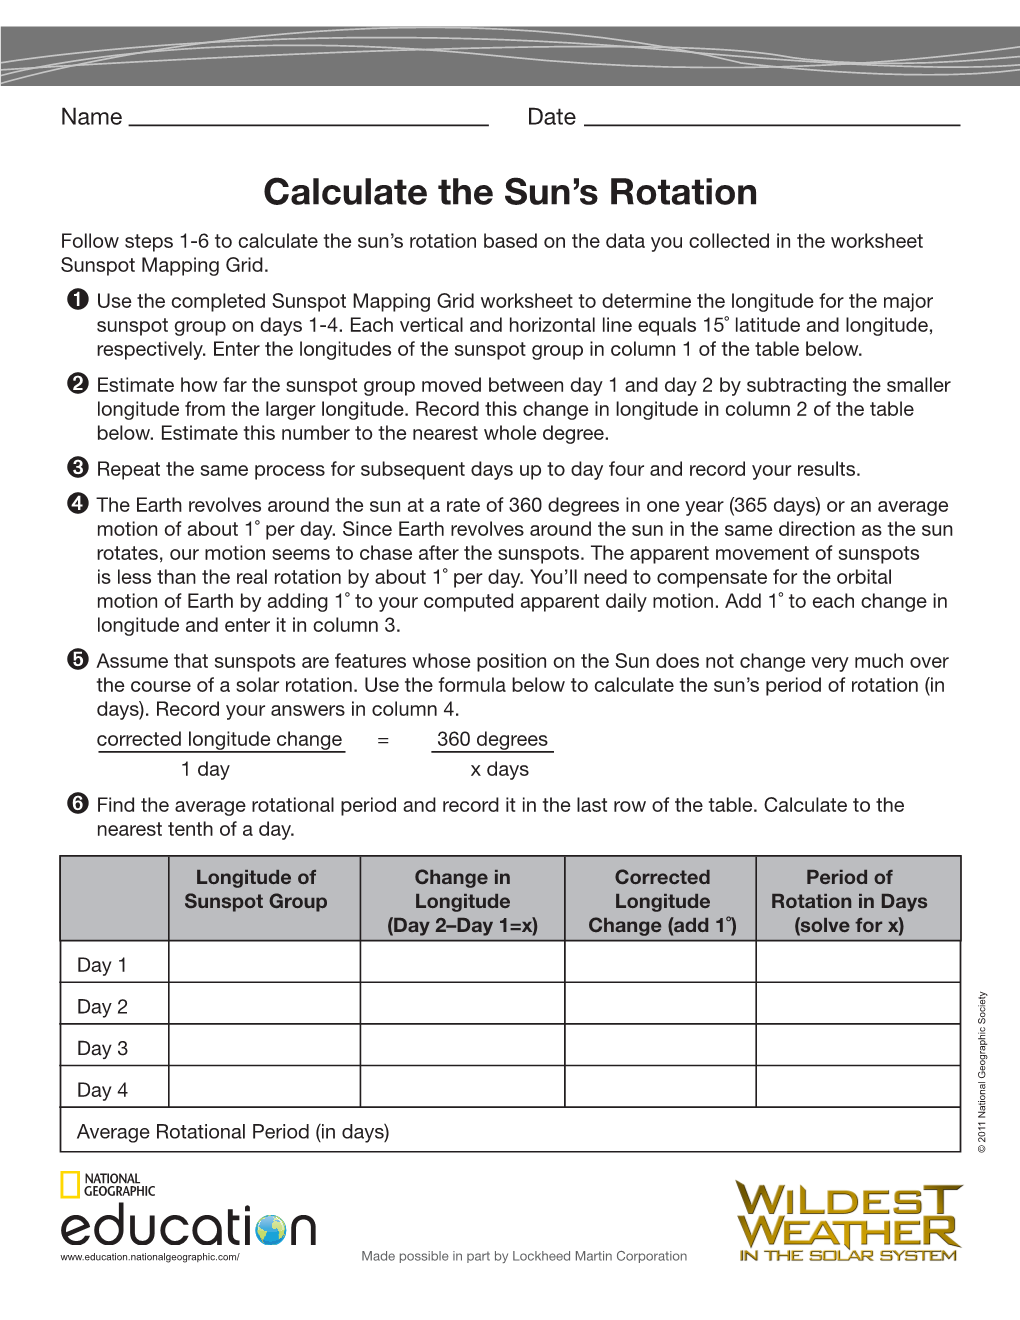 Calculate the Sun's Rotation